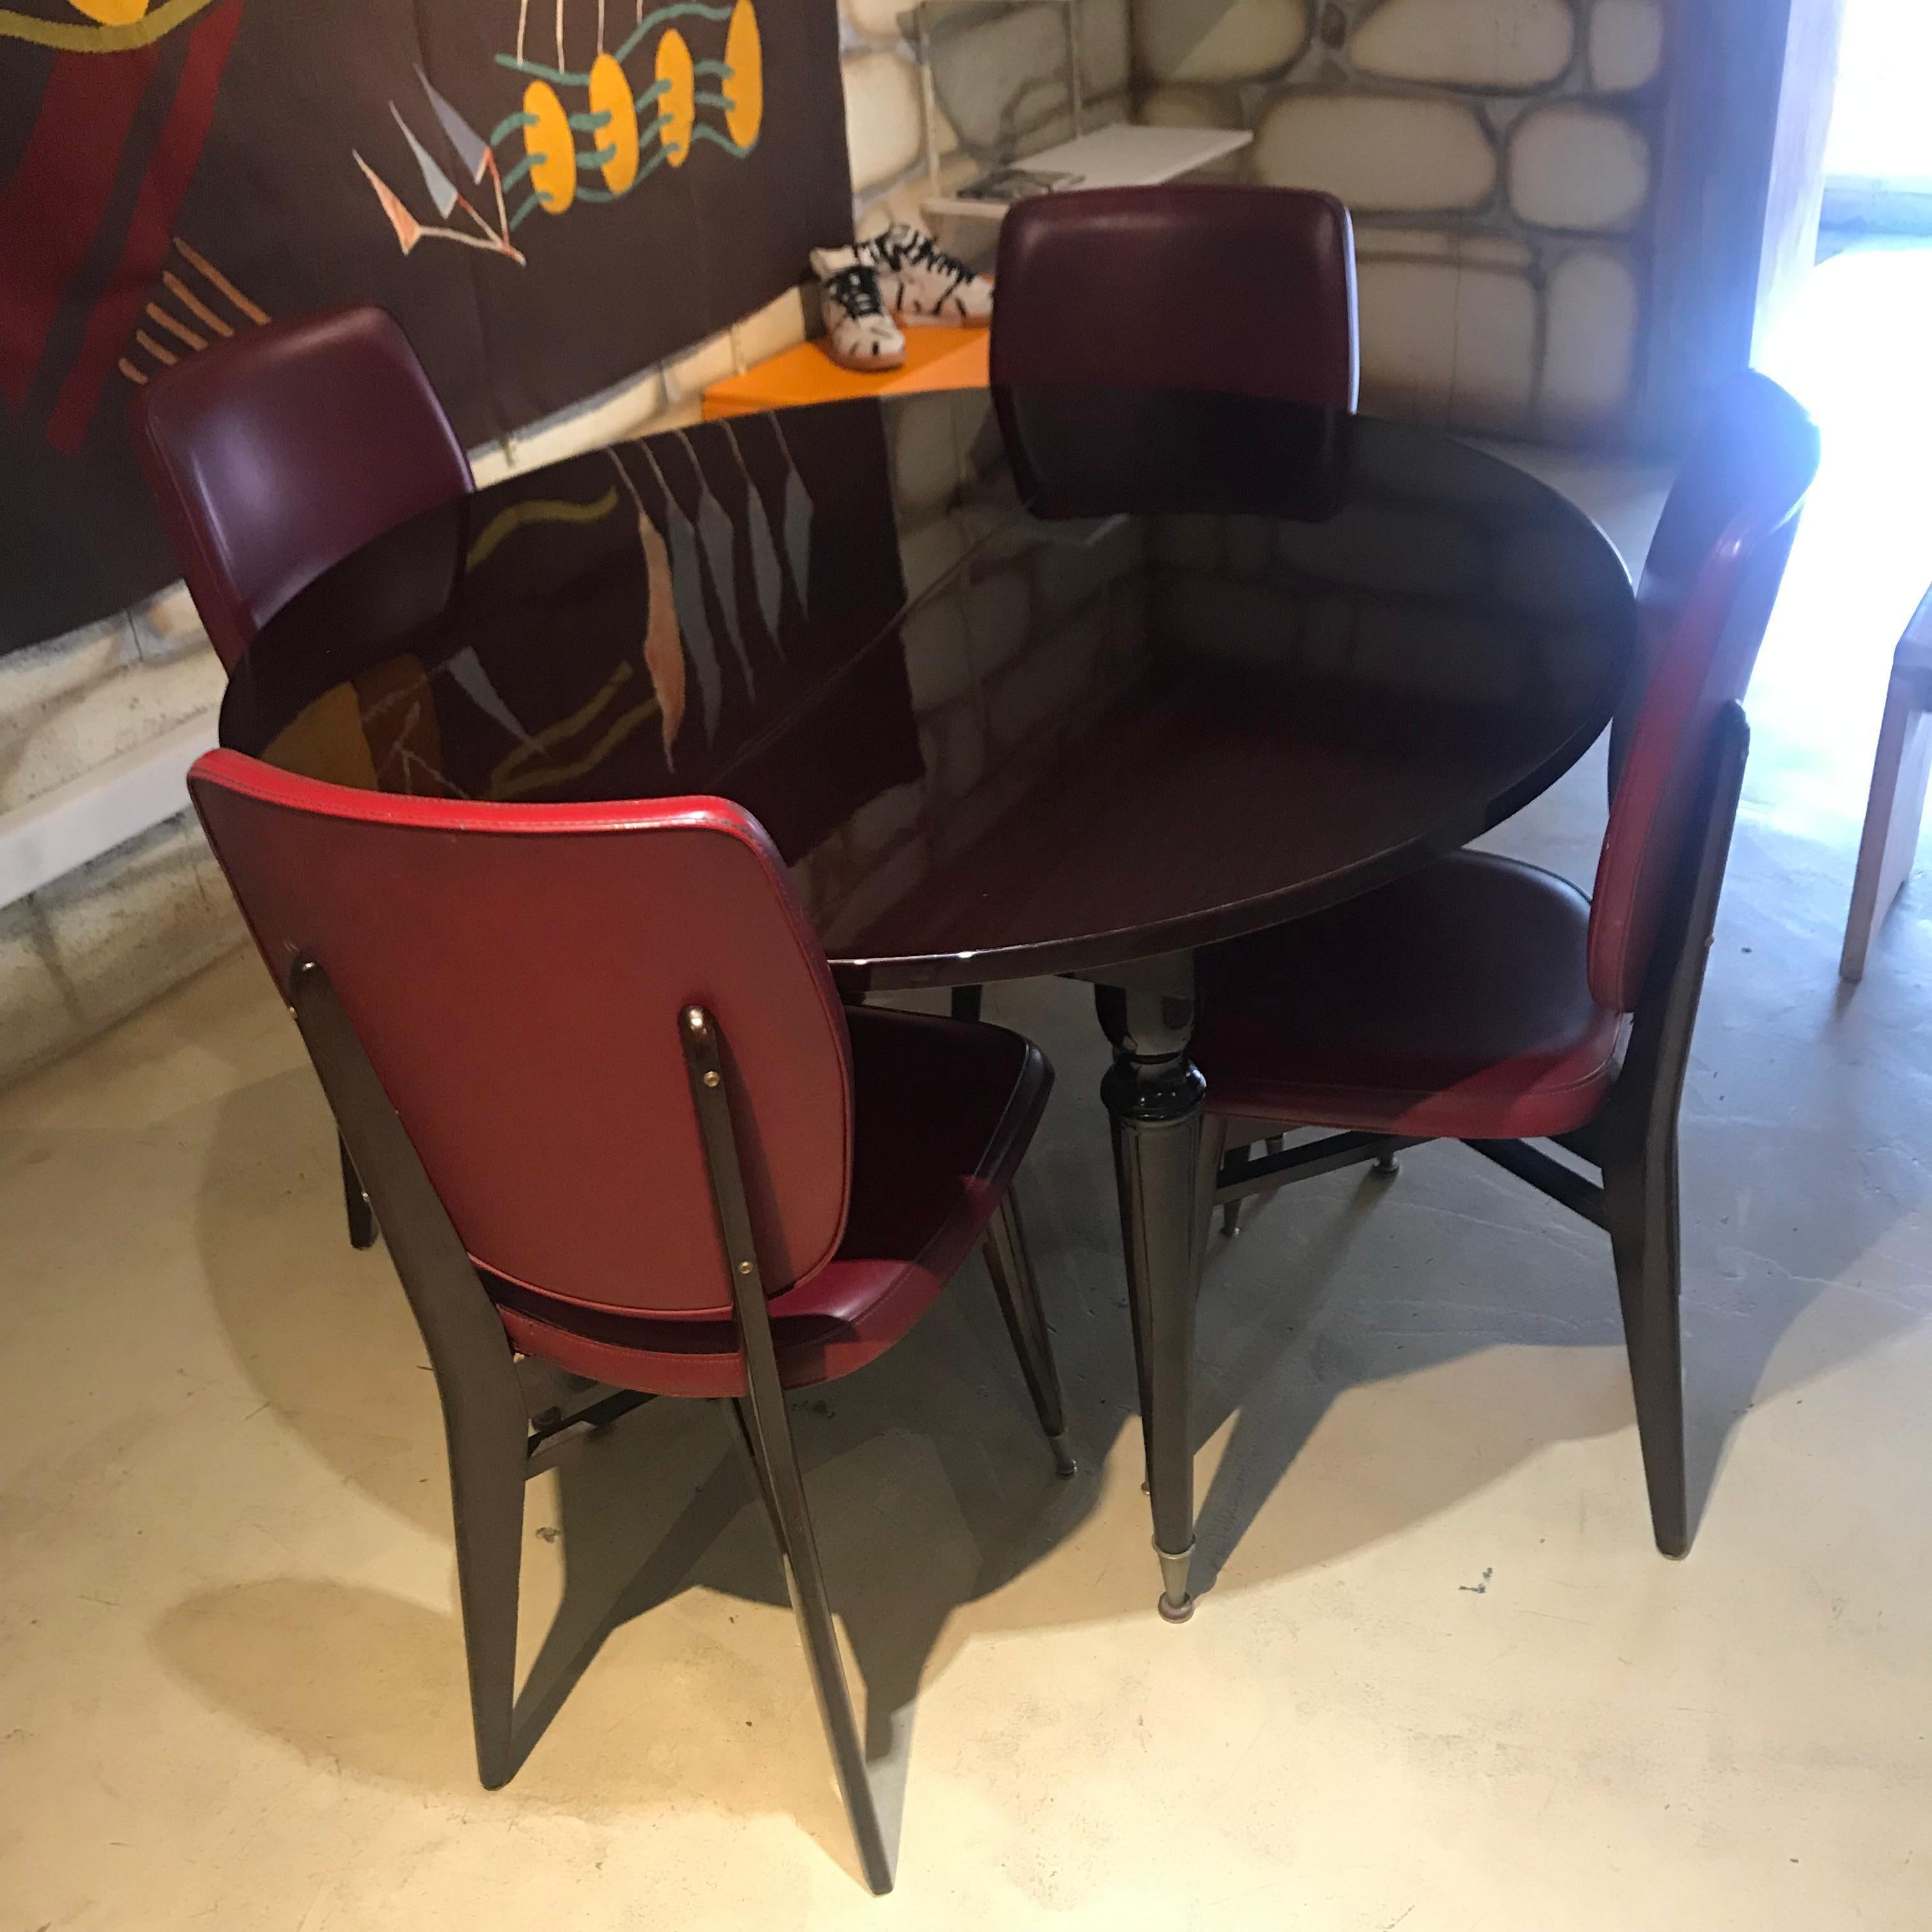 Le tout en acajou, 1 table (+ rallonge) et 4 chaises.
Table: diamètre de 110 cm et une hauteur de 74 cm
Chaise: 90 x 40 x 40
circa 1950.
Très bon état
L'ensemble à 790 €.
 